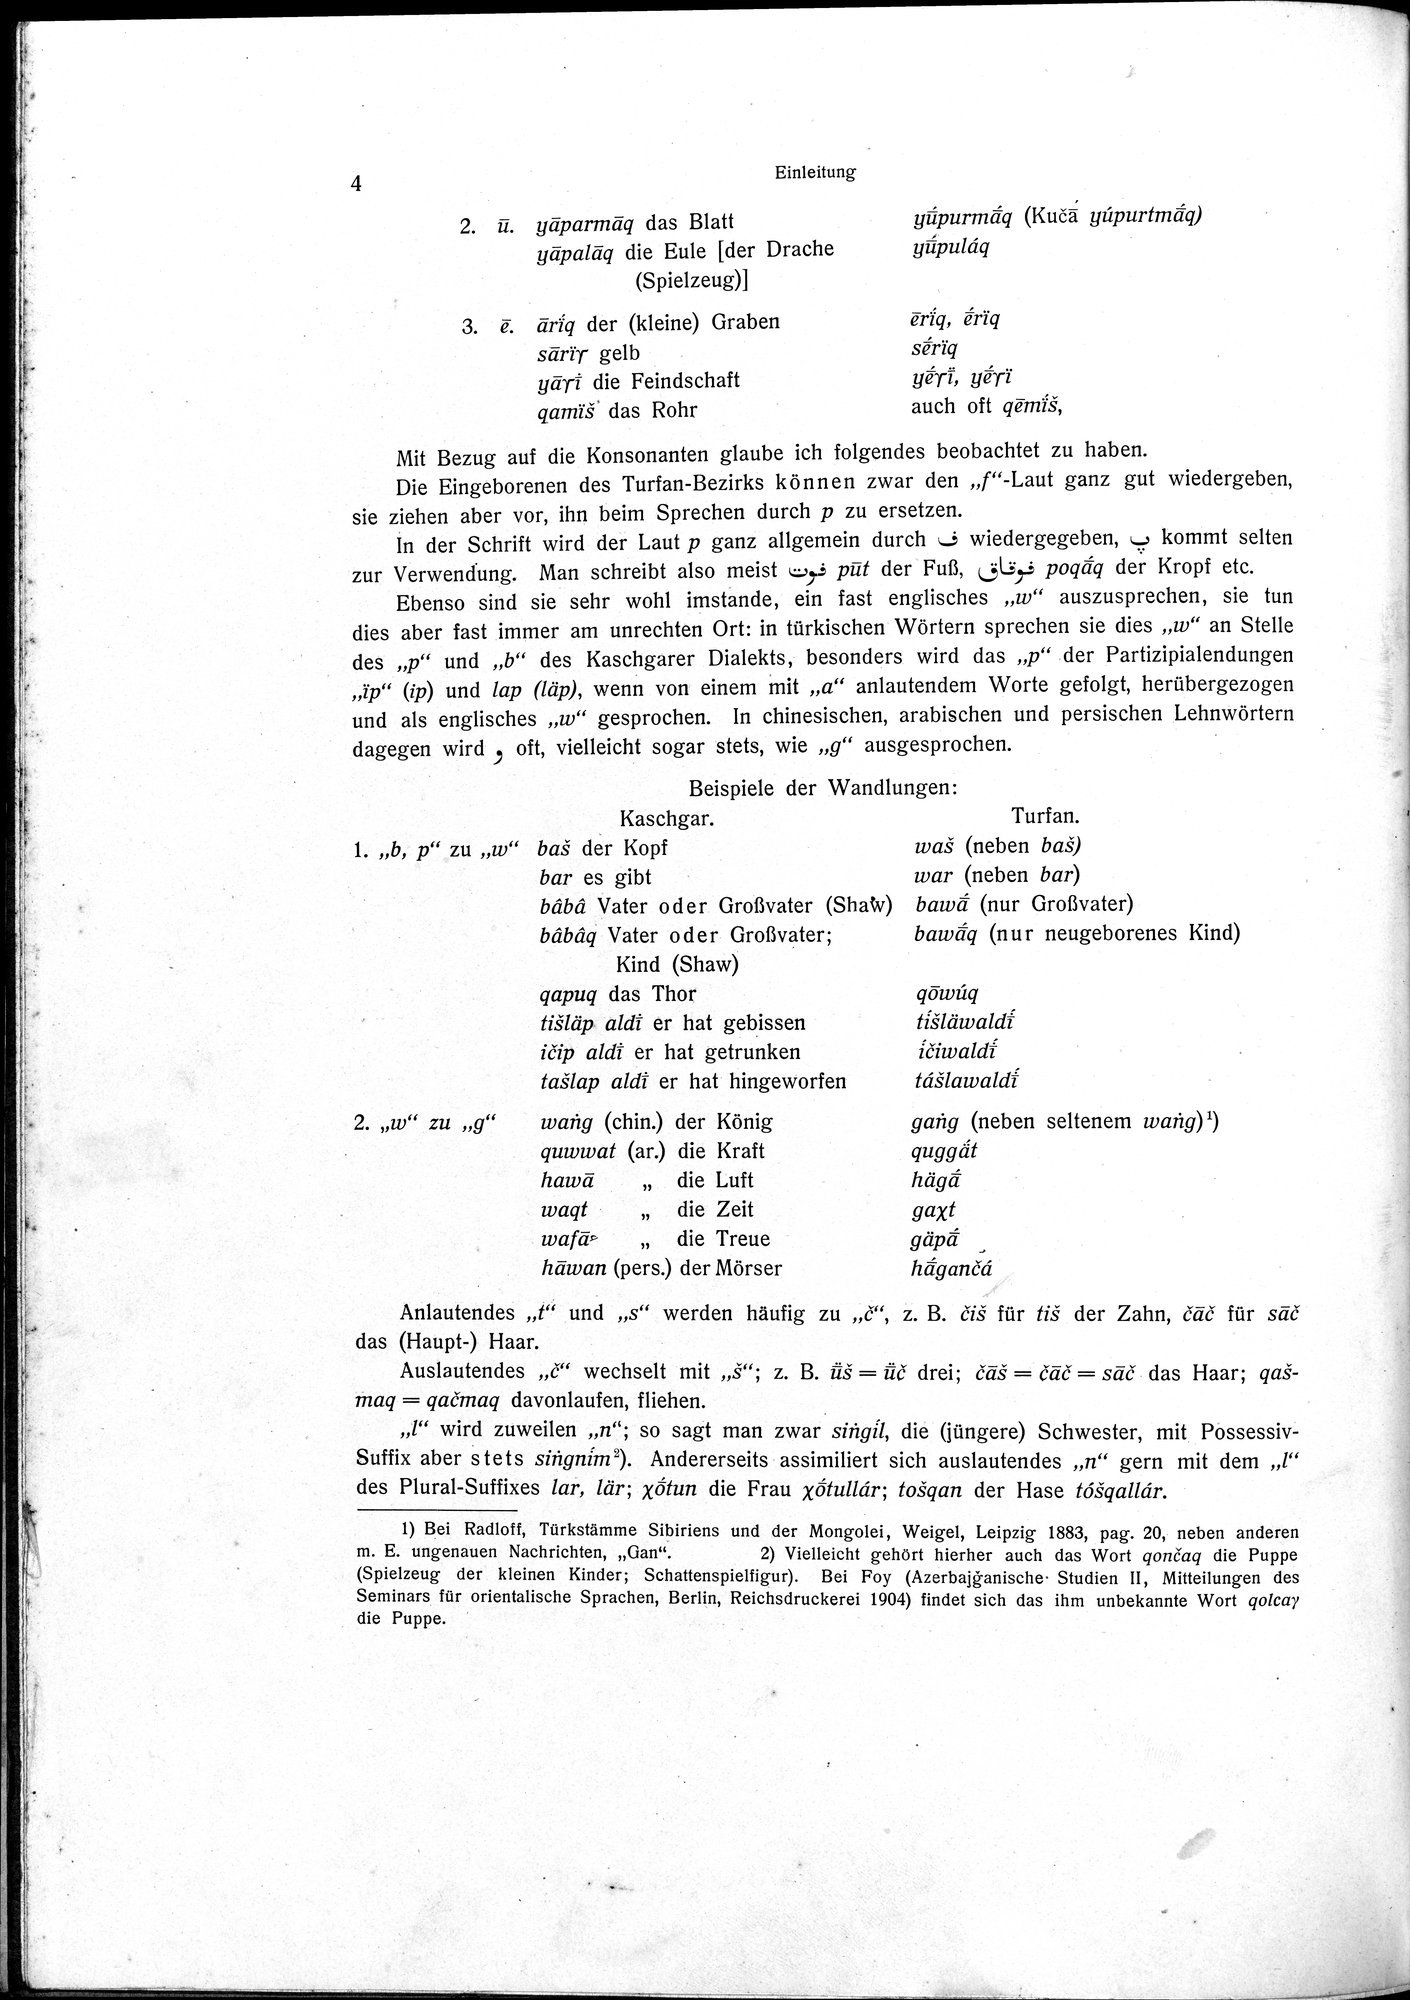 Sprichwörter und Lieder aus der Gegend von Turfan : vol.1 / Page 16 (Grayscale High Resolution Image)